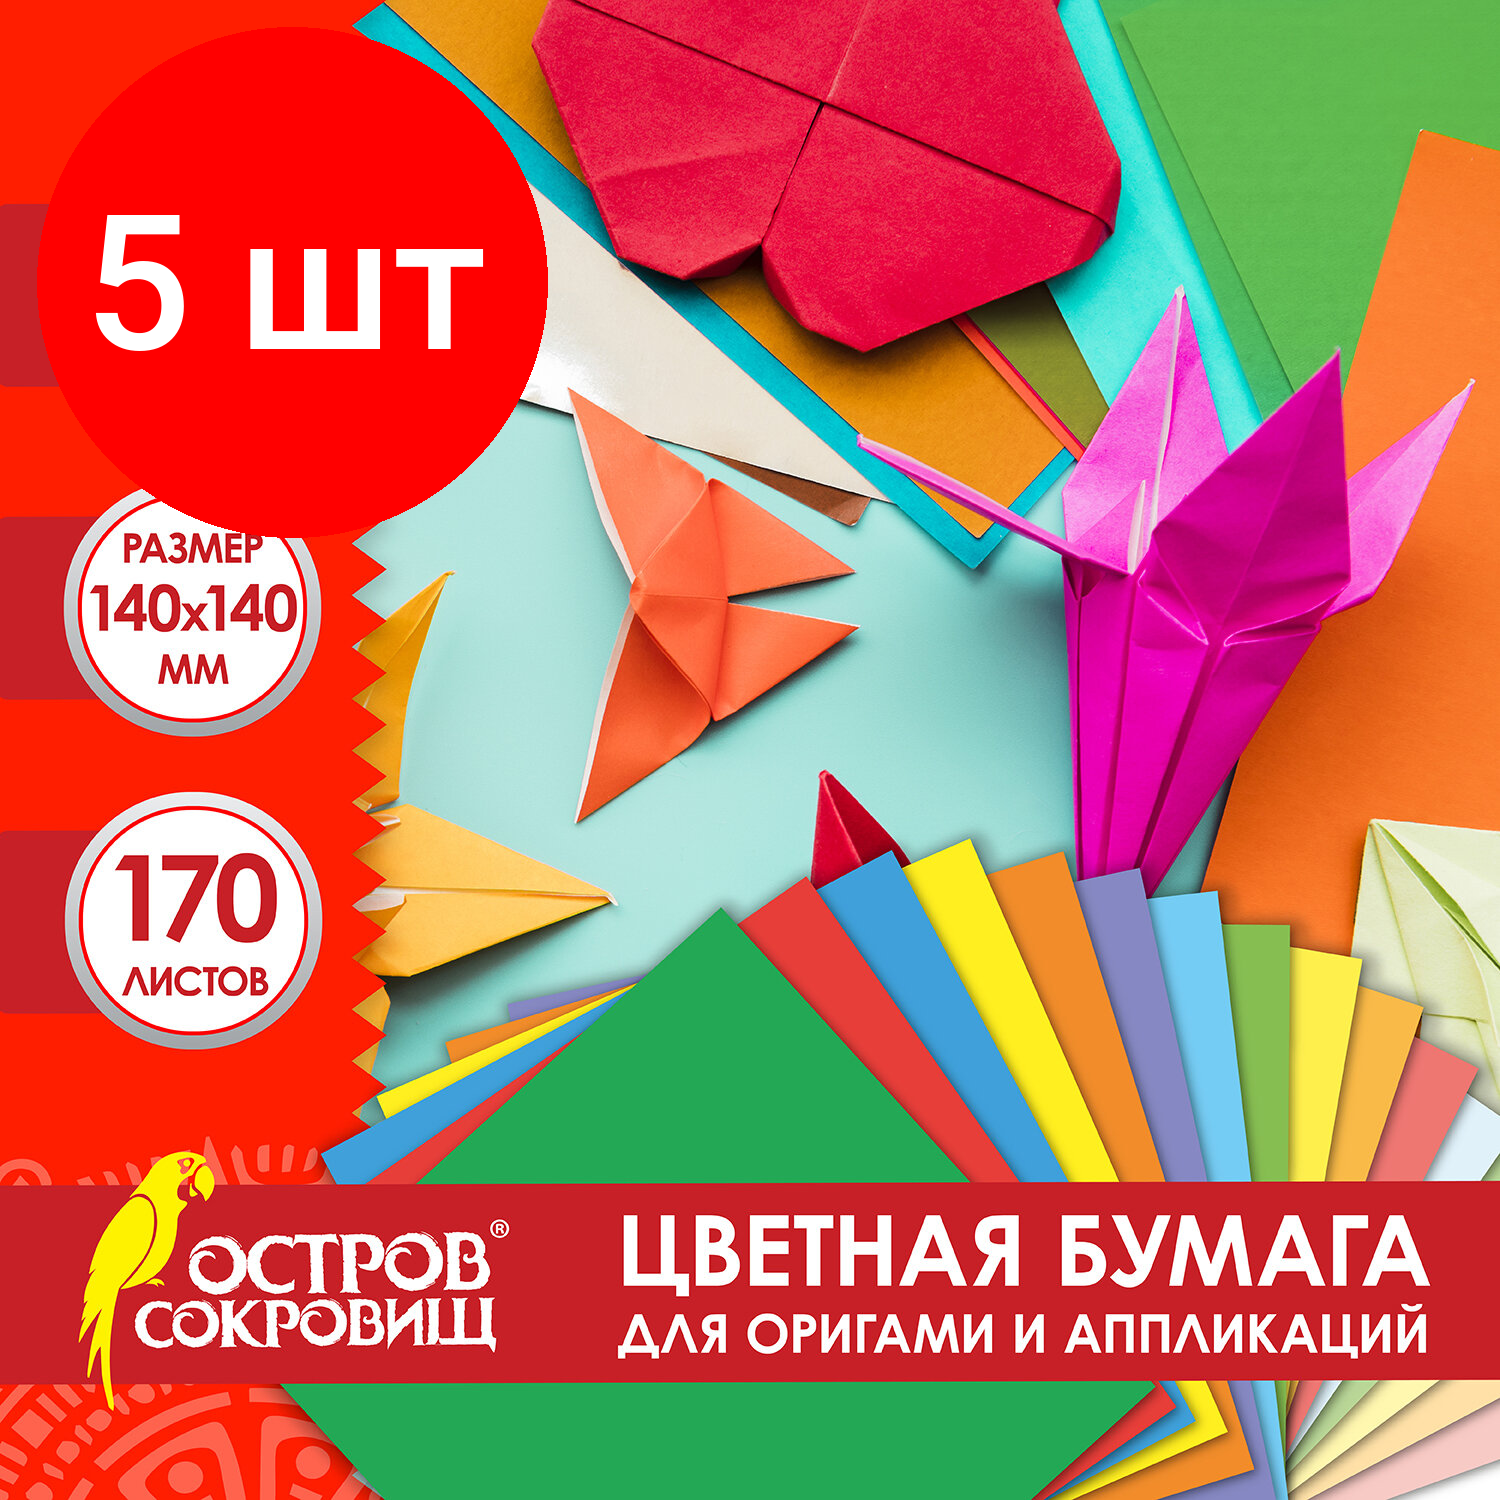 Комплект 5 шт, Бумага для оригами и аппликаций 14*14 см 170 листов, 17 цветов, остров сокровищ, хххх